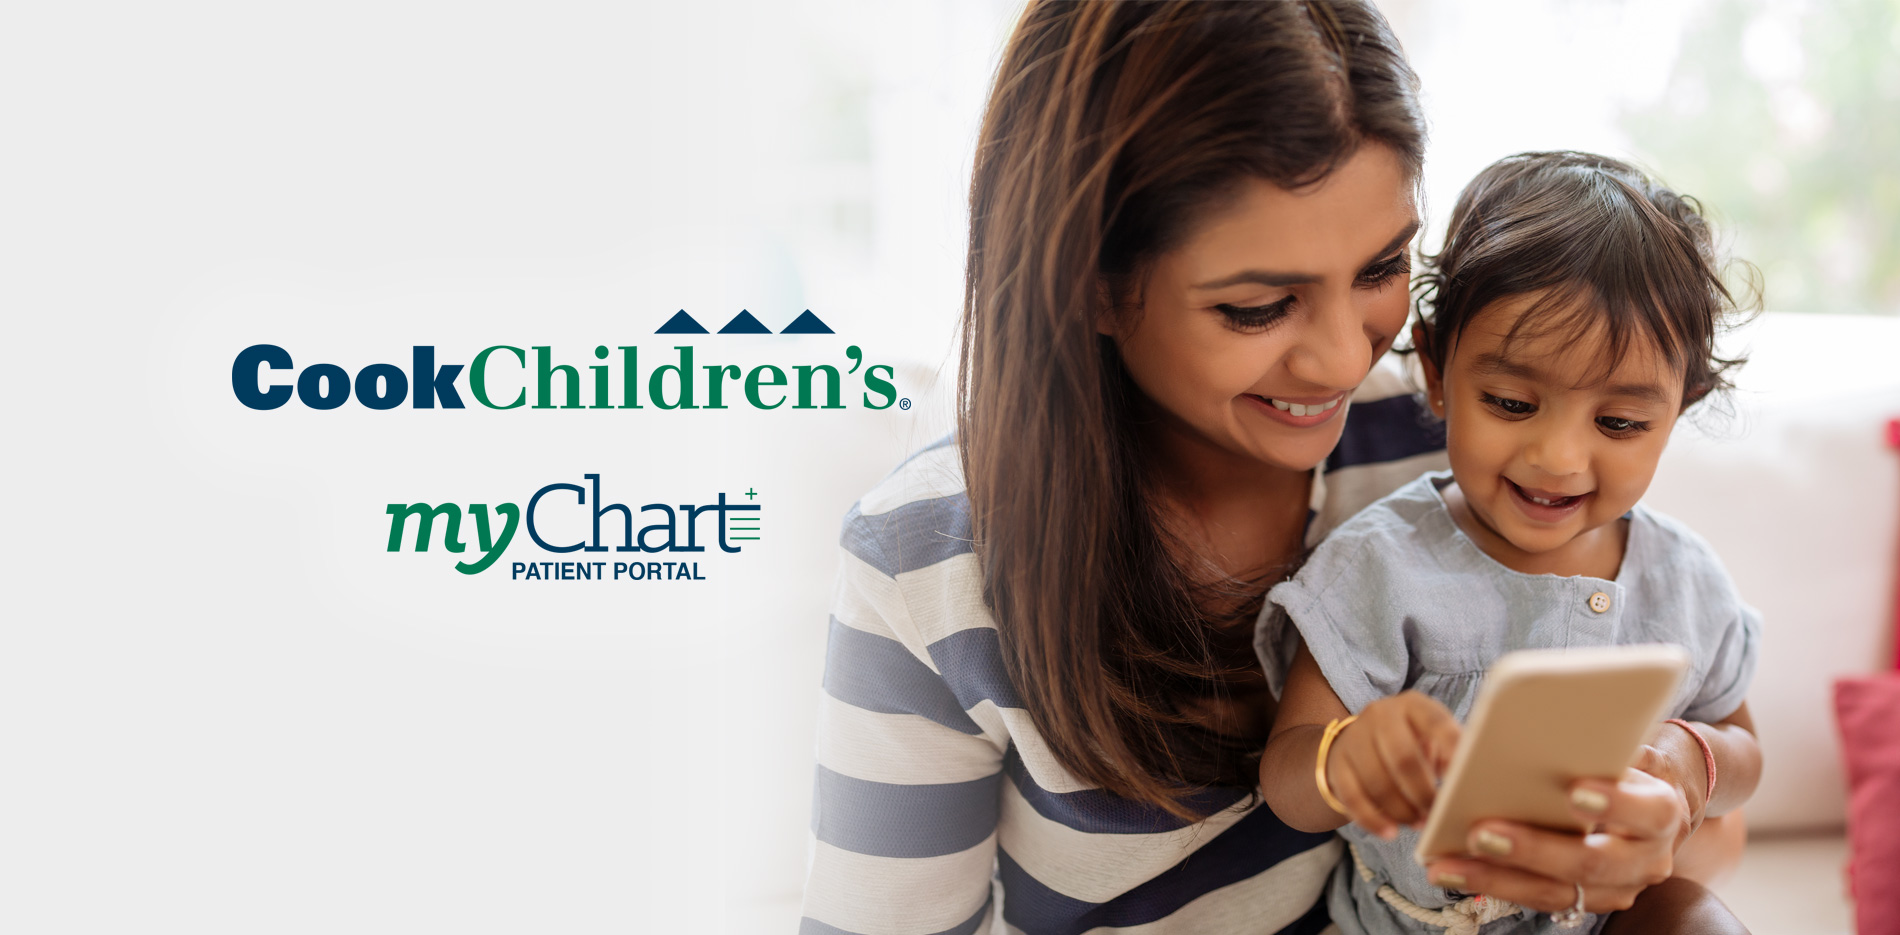 MyChart Patient Portal | Cook Children's